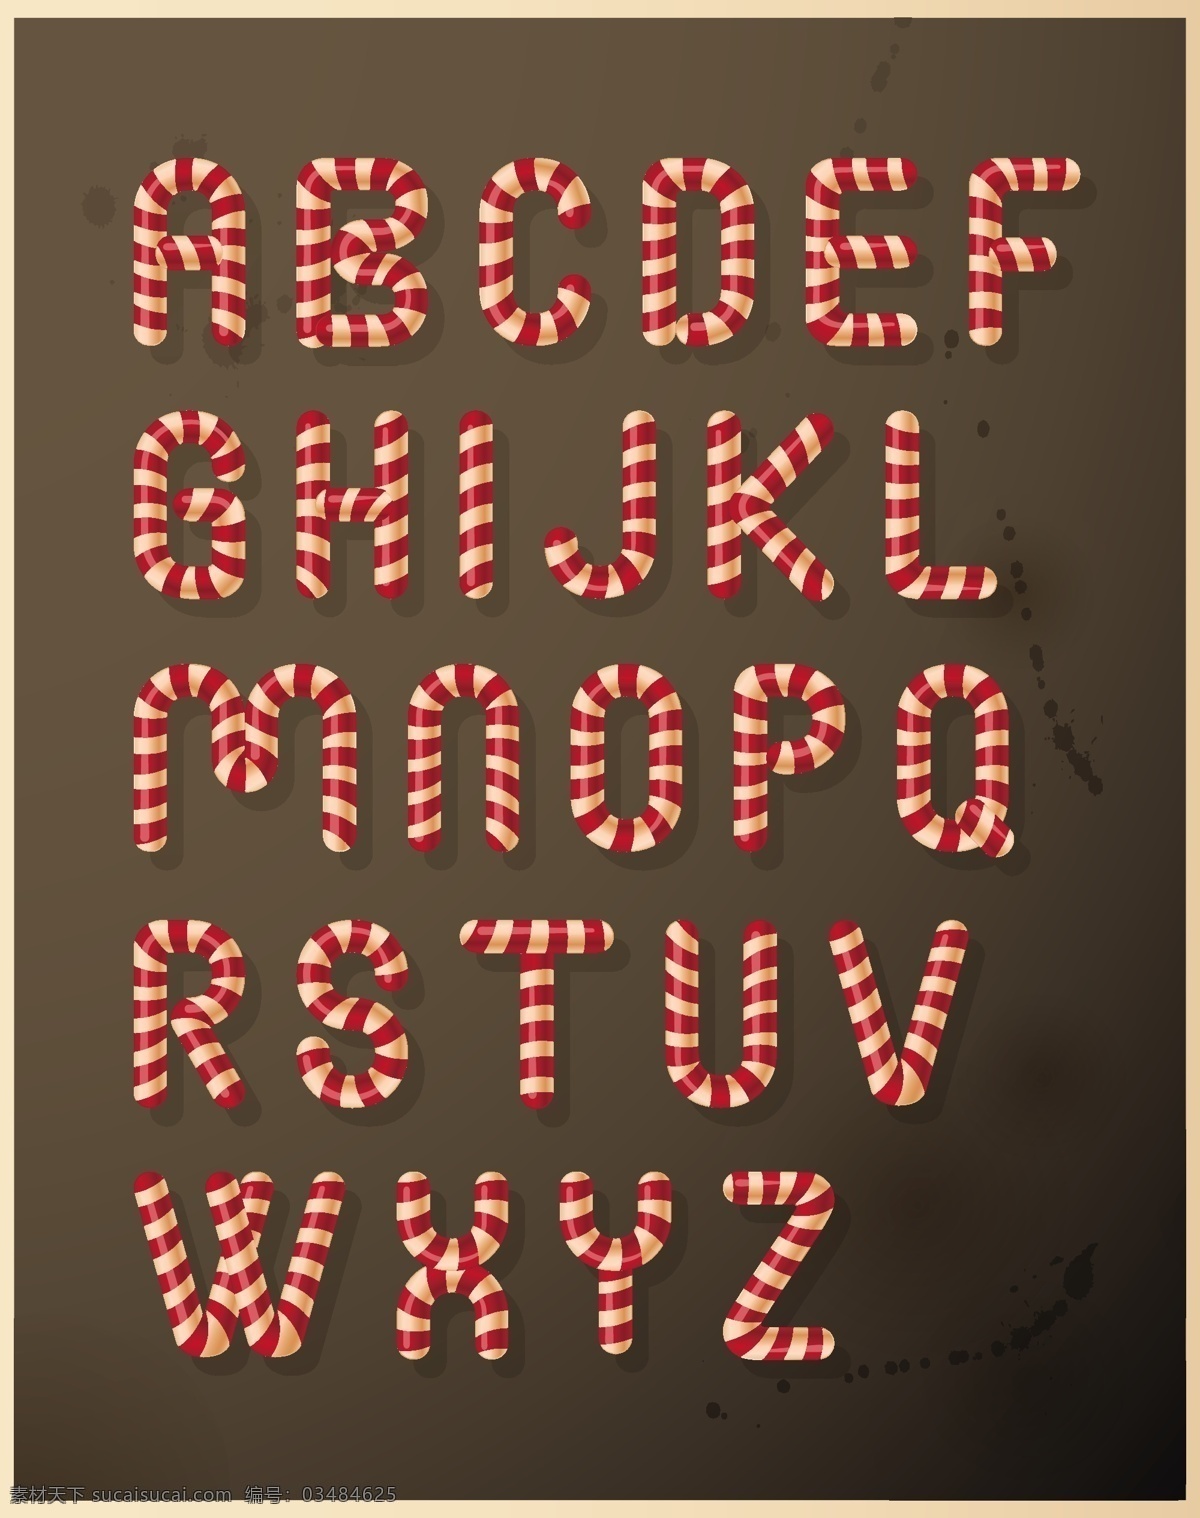 圣诞 糖果 字母 矢量图 艺术 字体 设计素材 矢量 创意字体 花纹字母 英文字母 免费字体 黑色